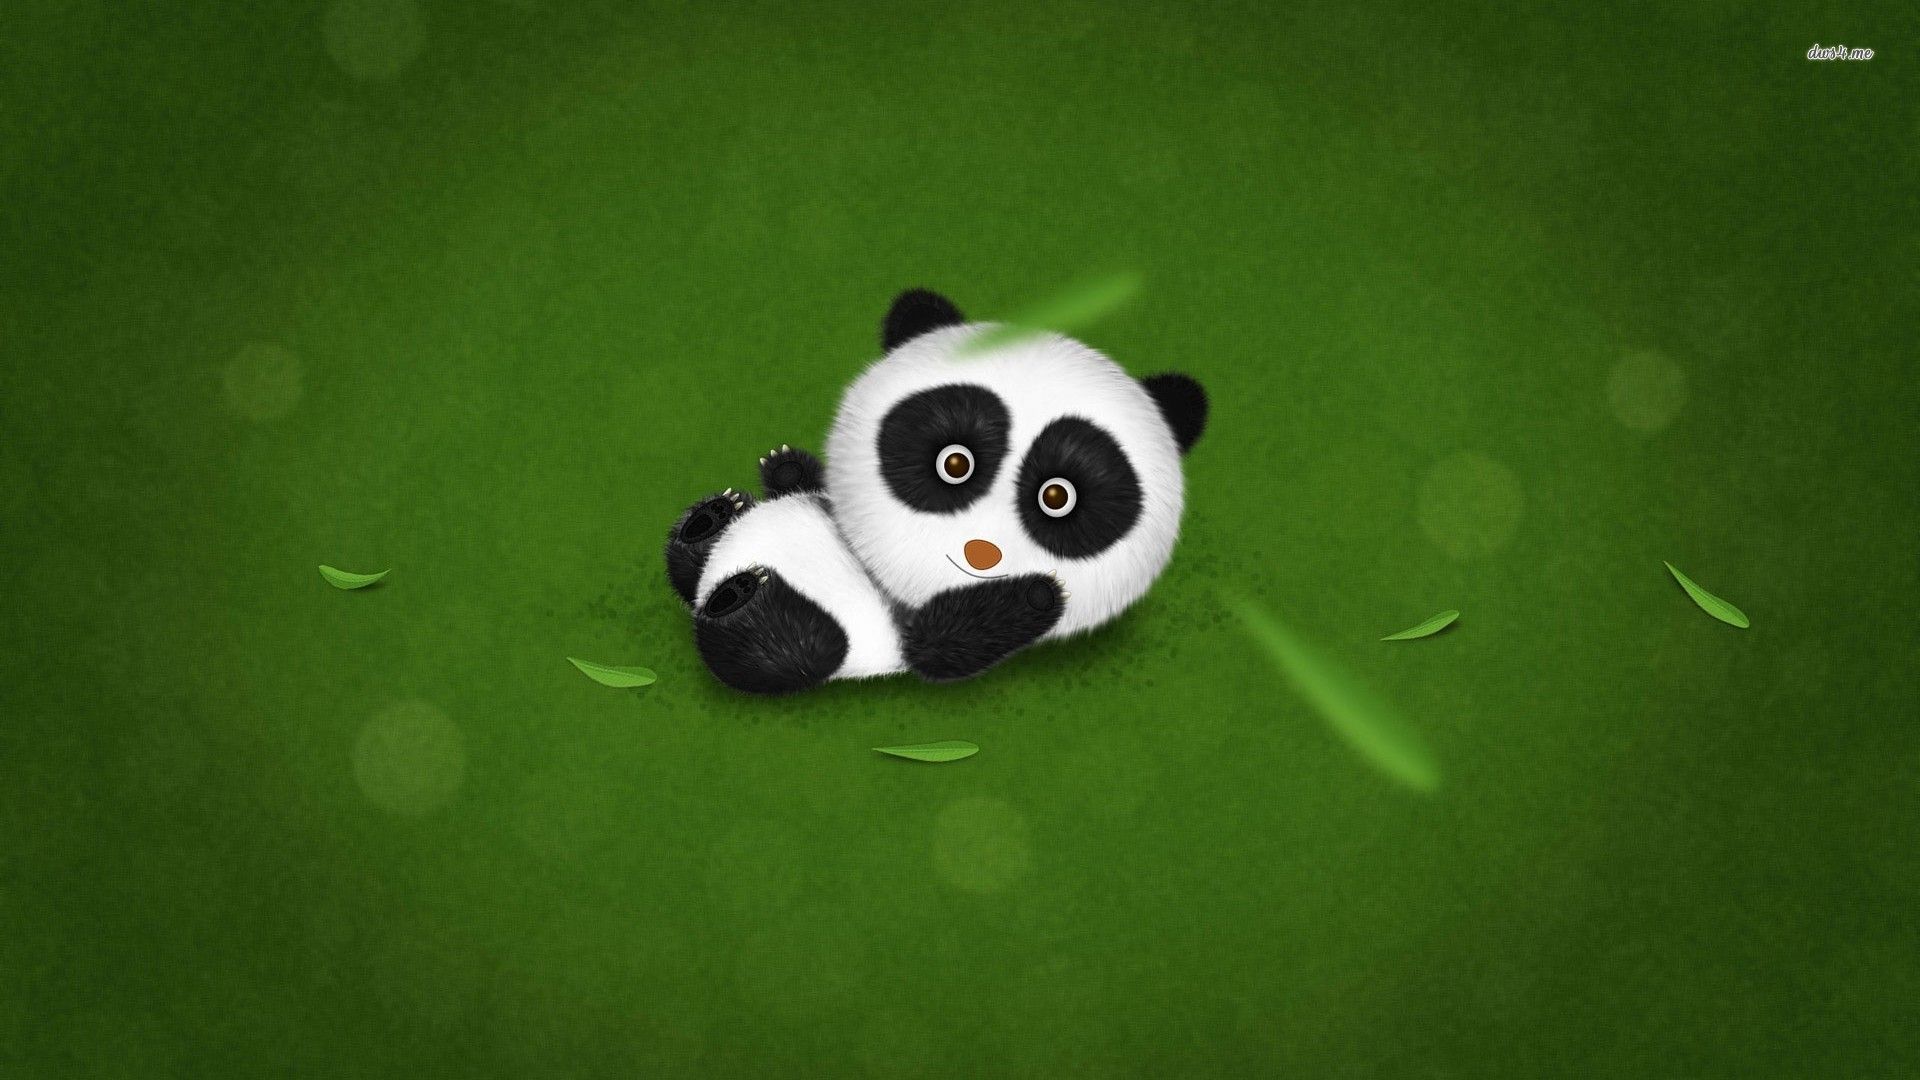 Baby panda wallpaper - Digital Art wallpapers -